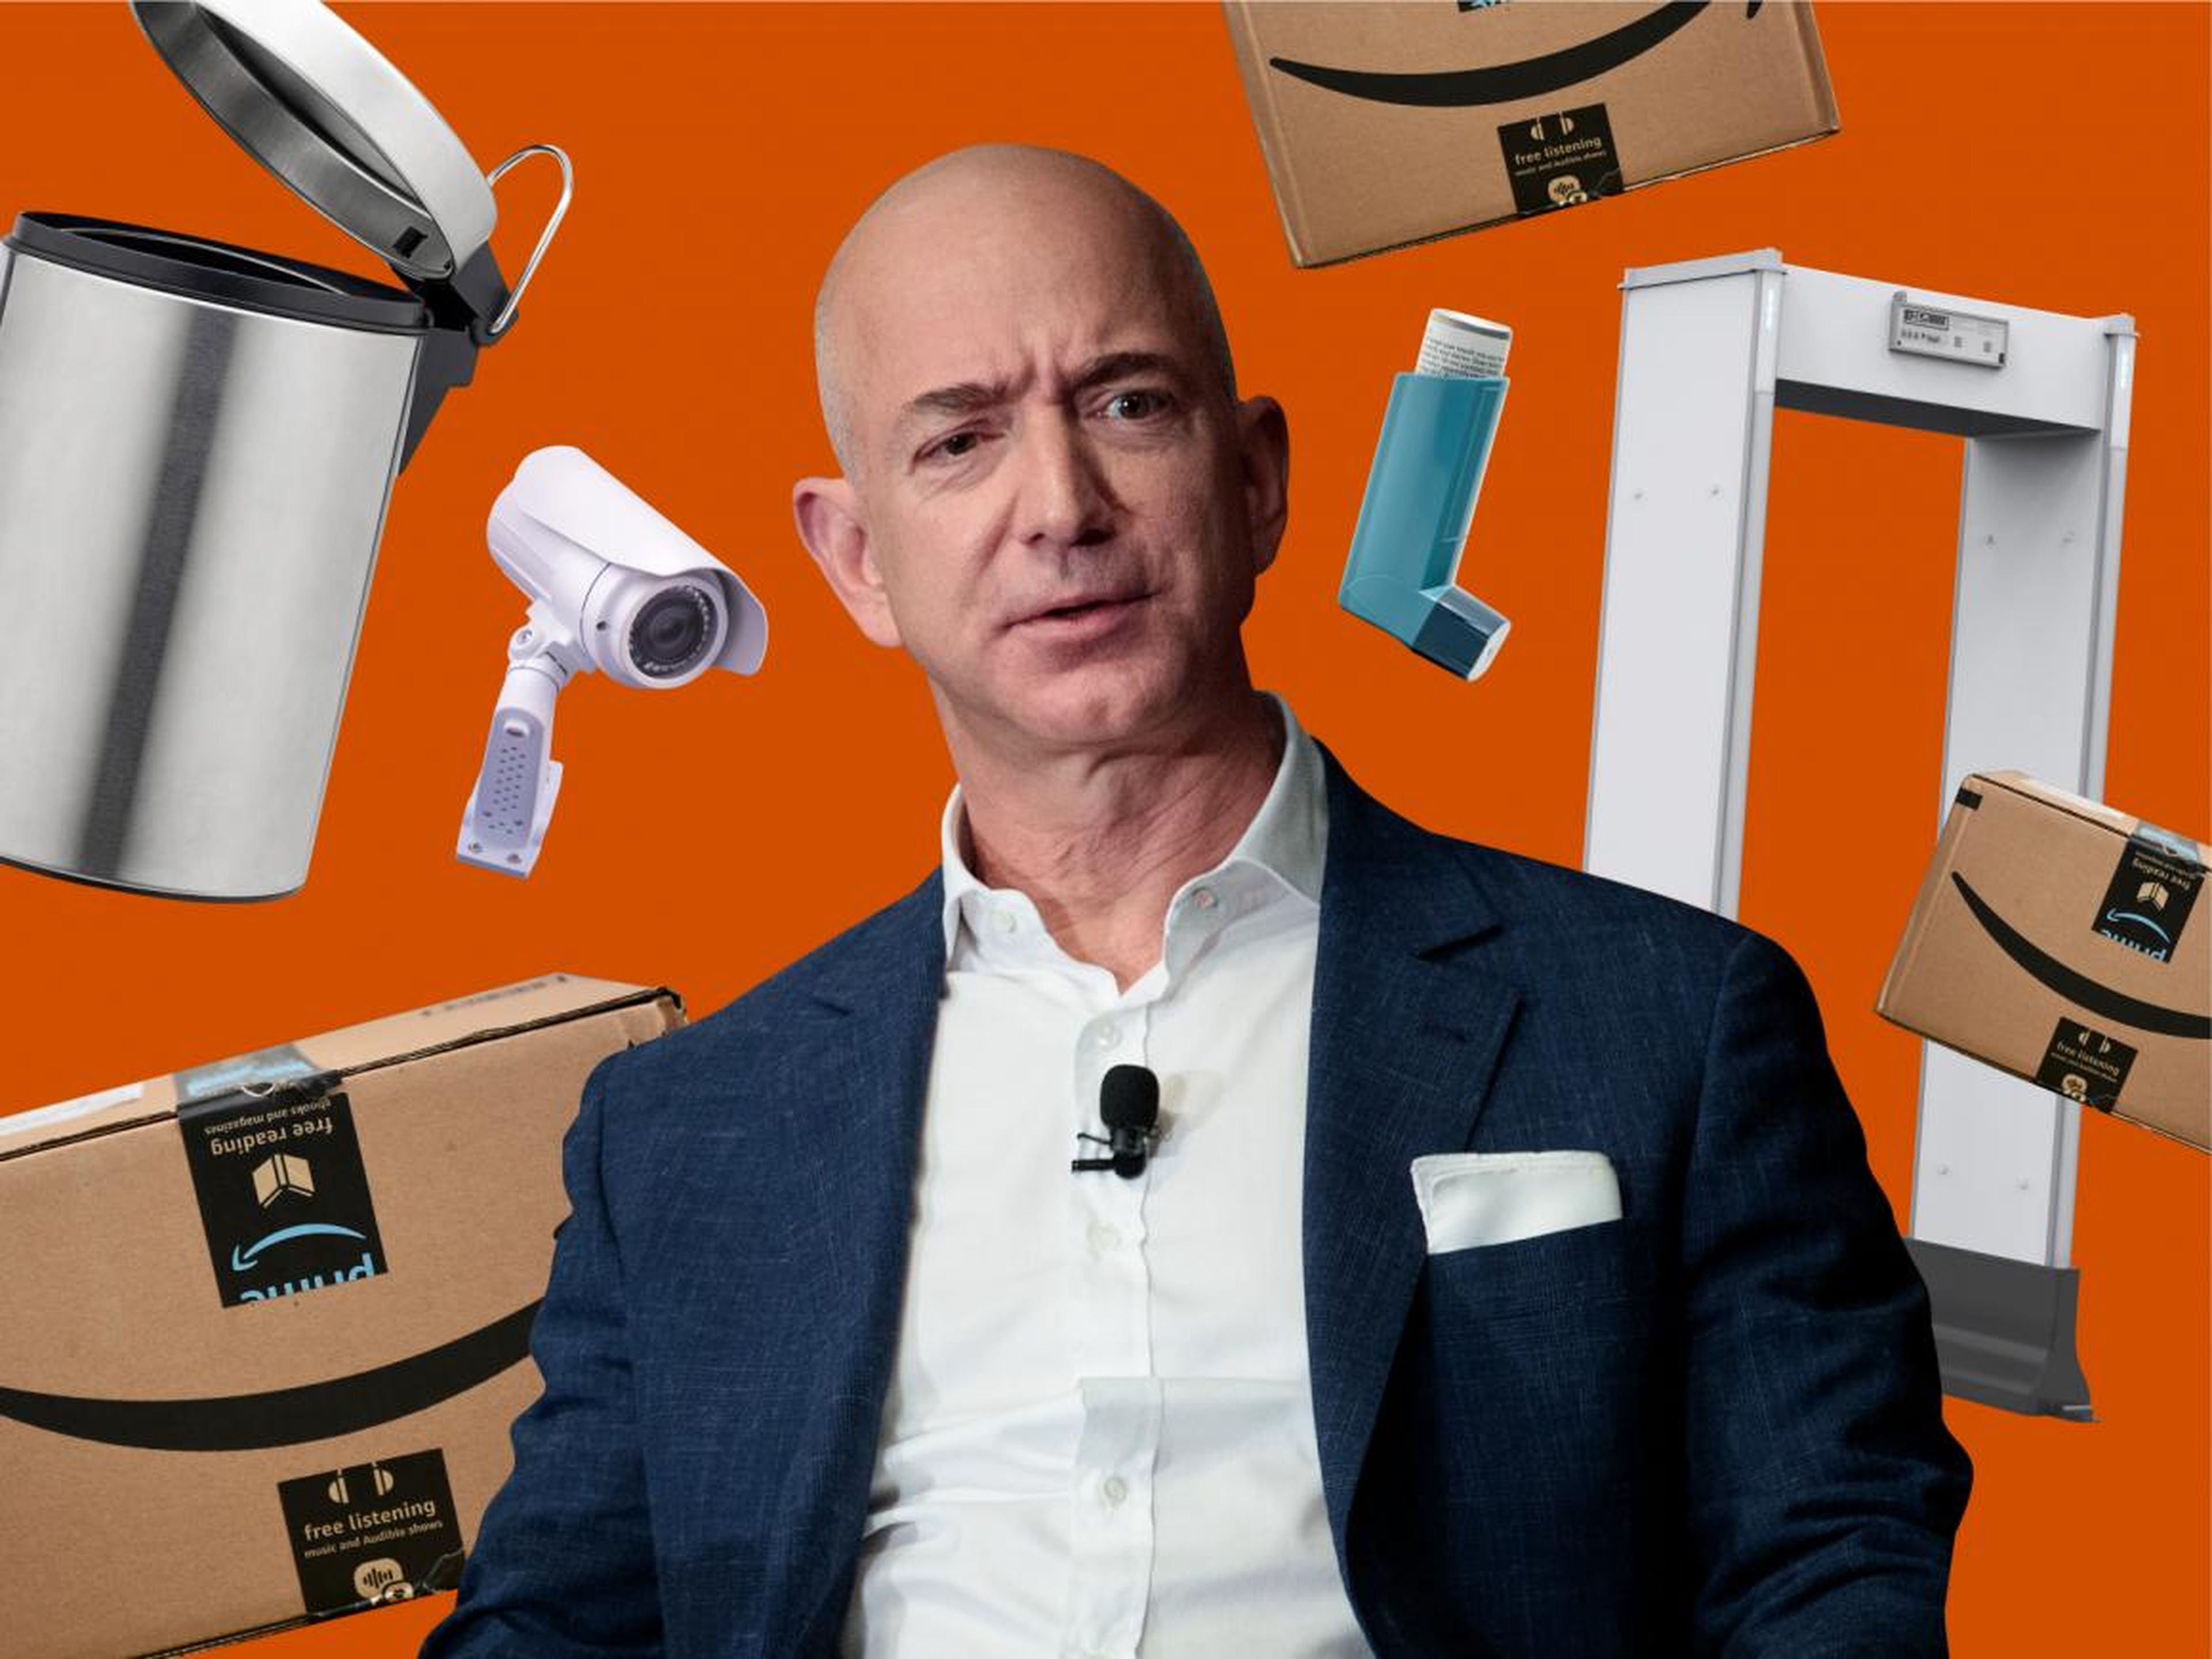 El CEO de Amazon, Jeff Bezos, entre algunos de los productos que se venden en la plataforma.